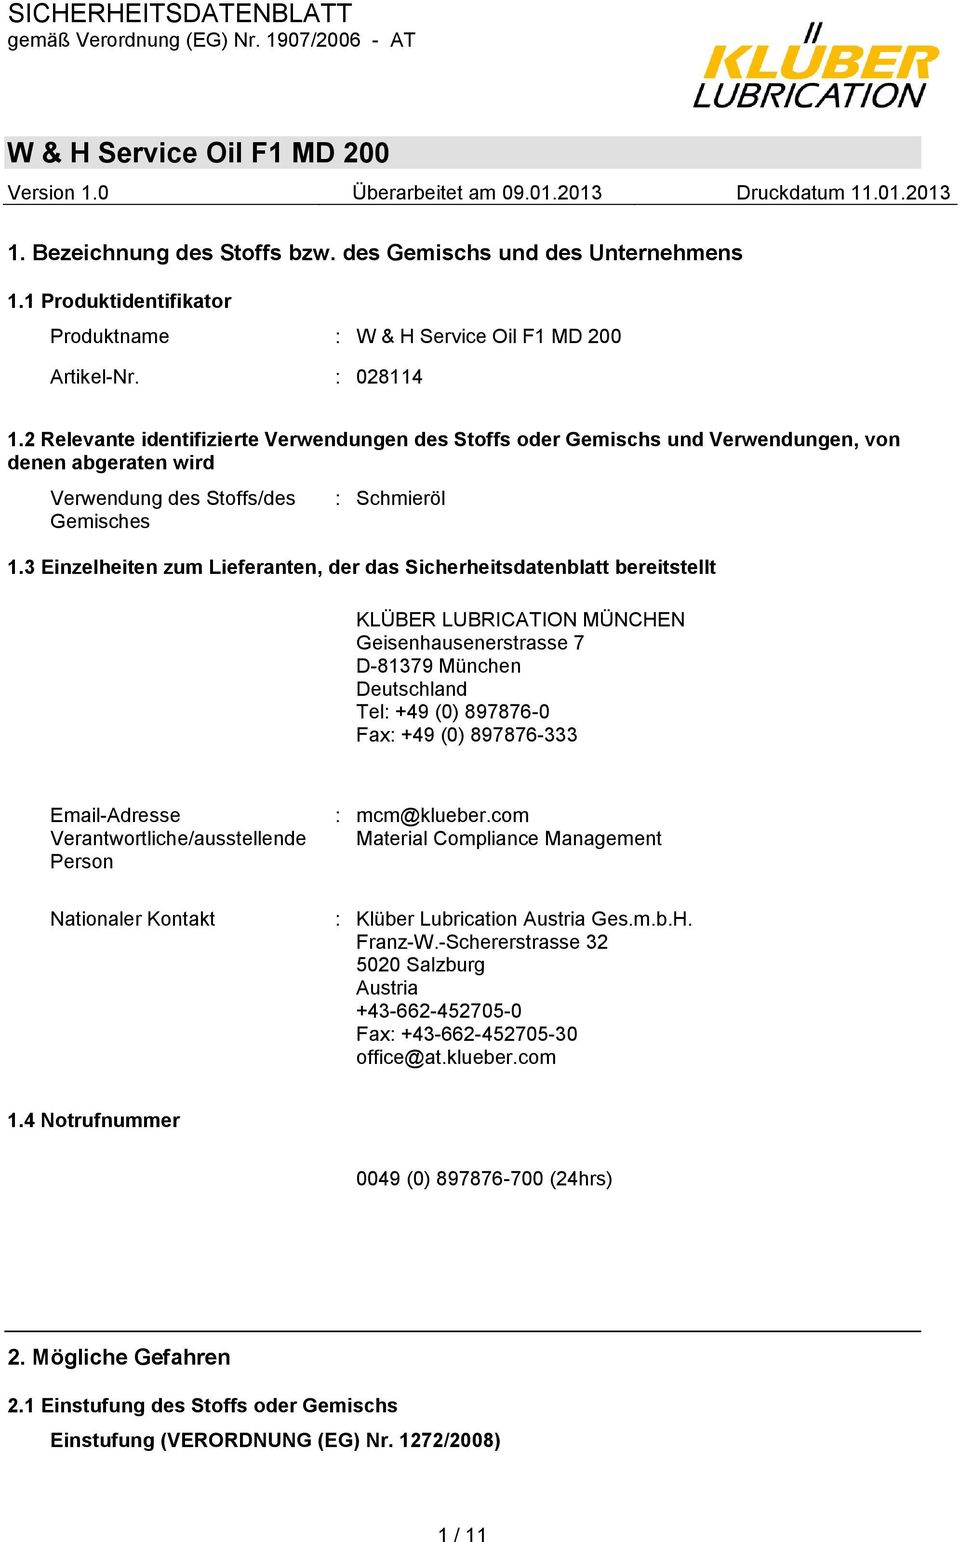 3 Einzelheiten zum Lieferanten, der das Sicherheitsdatenblatt bereitstellt KLÜBER LUBRICATION MÜNCHEN Geisenhausenerstrasse 7 D-81379 München Deutschland Tel: +49 (0) 897876-0 Fax: +49 (0) 897876-333